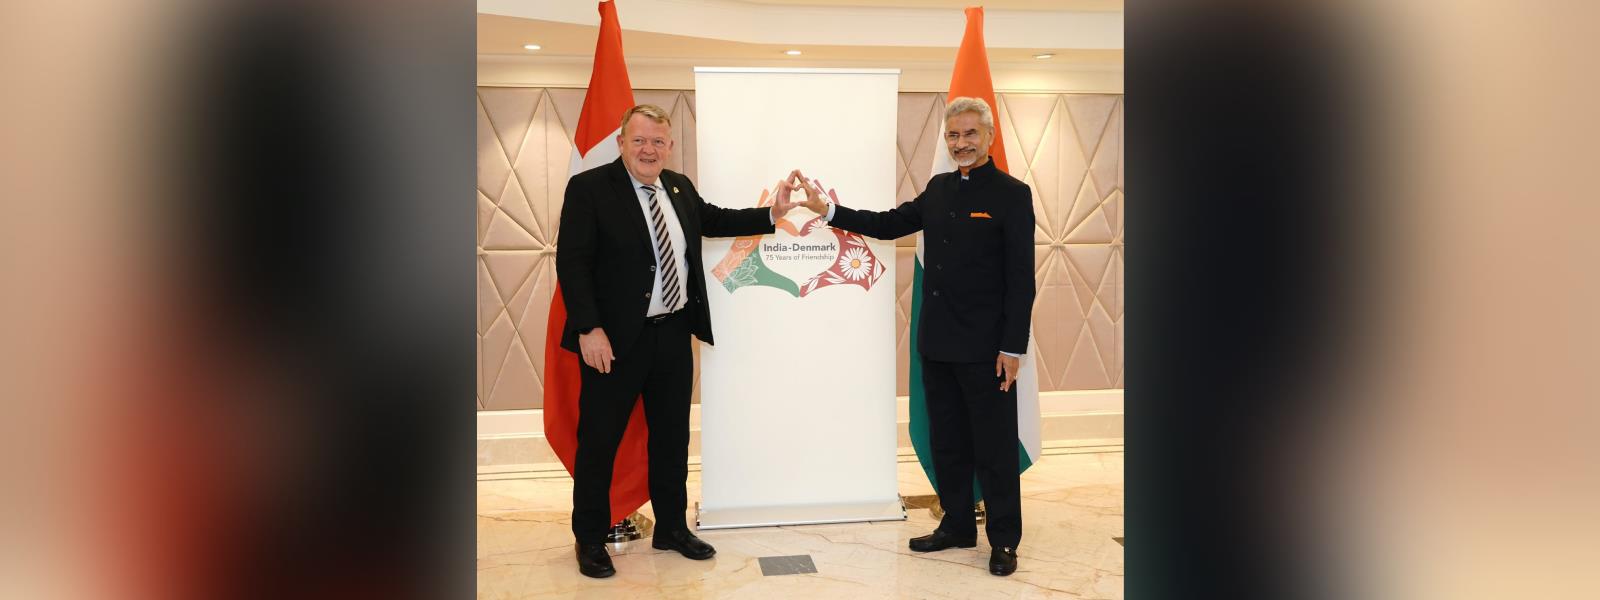 External Affairs Minister Dr. S. Jaishankar and Foreign Minister of Denmark, H.E. Mr. Lars Lokke Rasmussen unveiled a logo celebrating 75 years of India-Denmark diplomatic relations in New Delhi